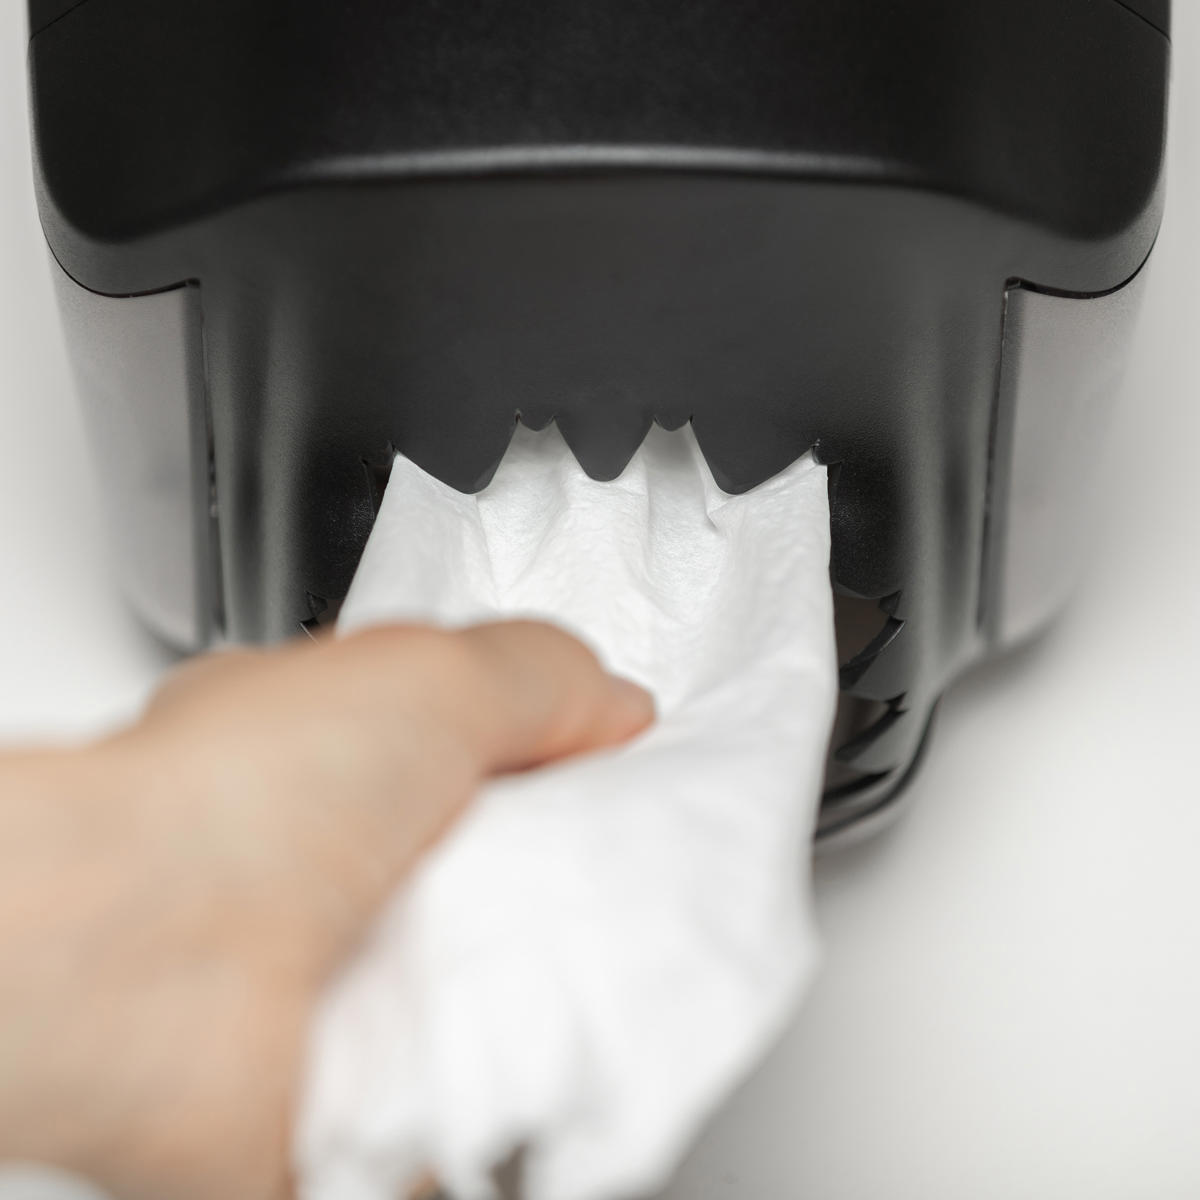 Ząbki odrywające papier są zakrzywione do wewnątrz, co zapobiega ryzyku urazu.